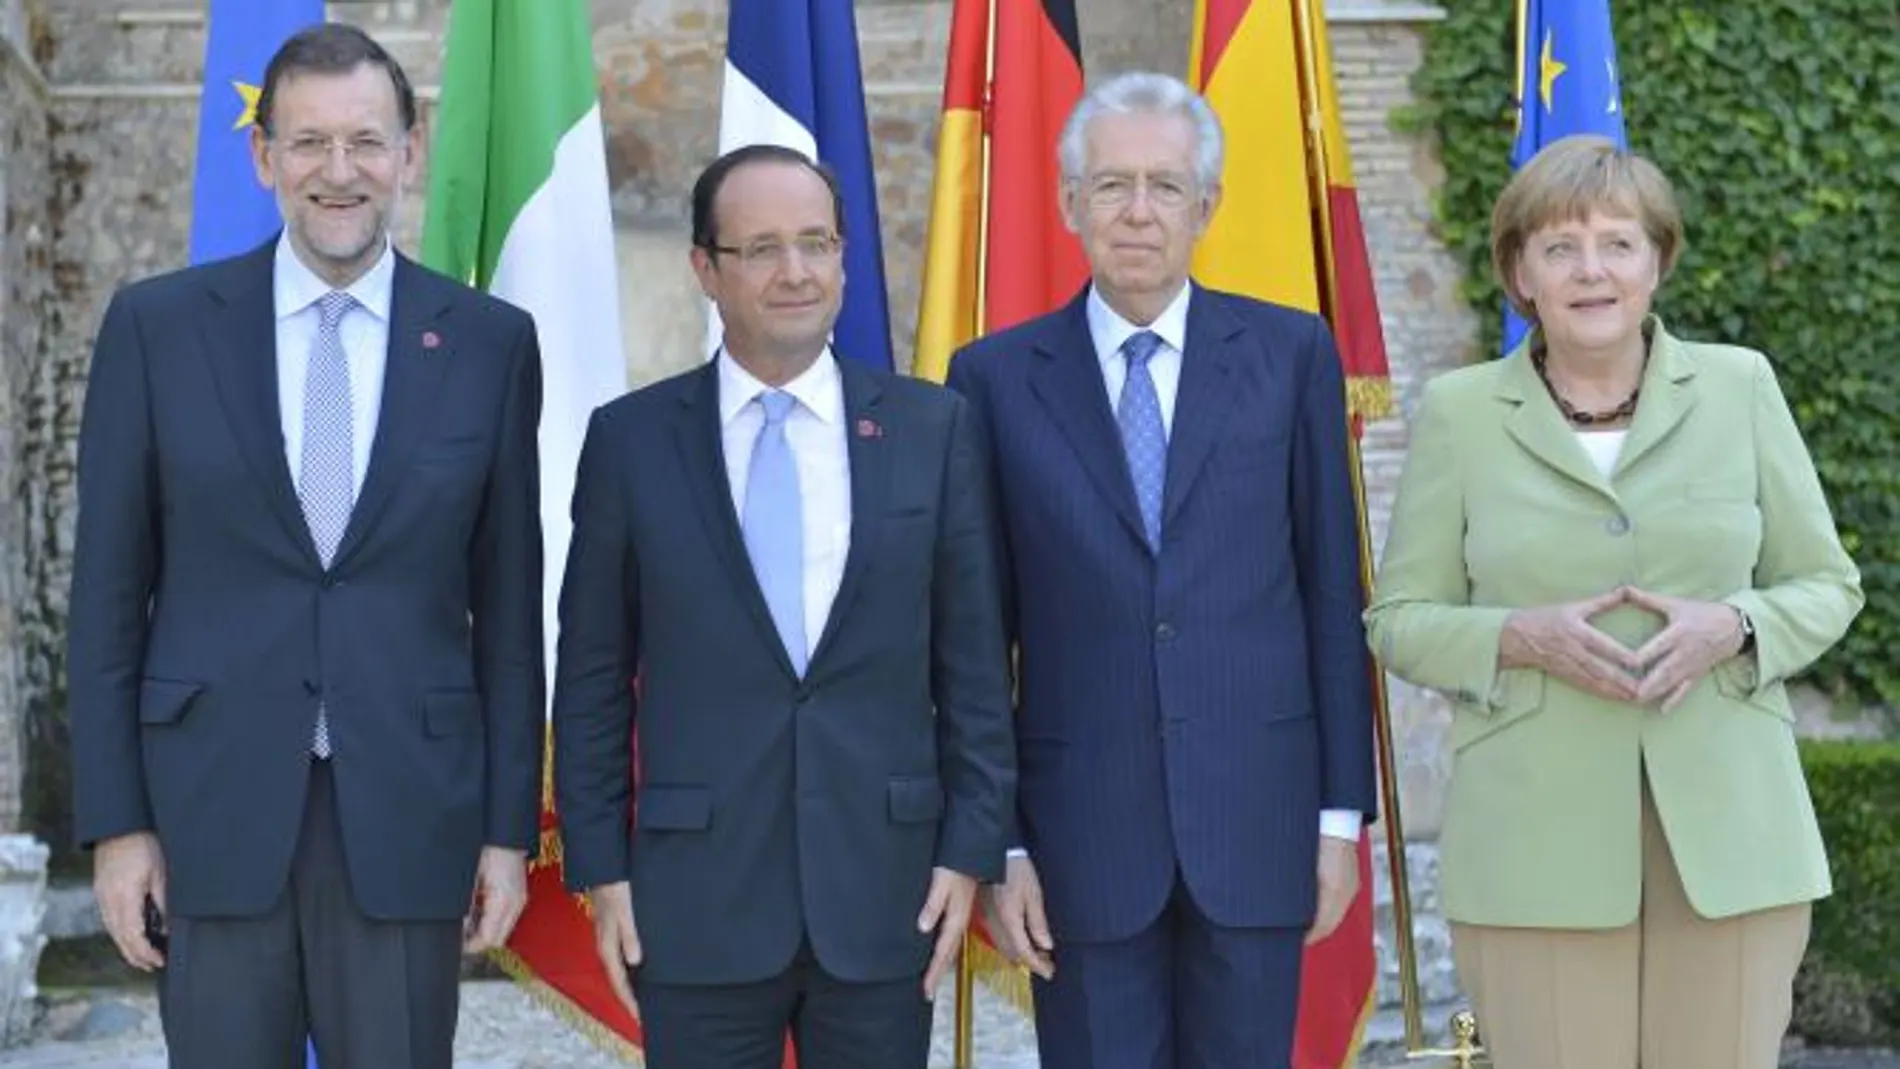 Imagen del encuentre de los Rajoy, Hollande y Monti en junio en Roma